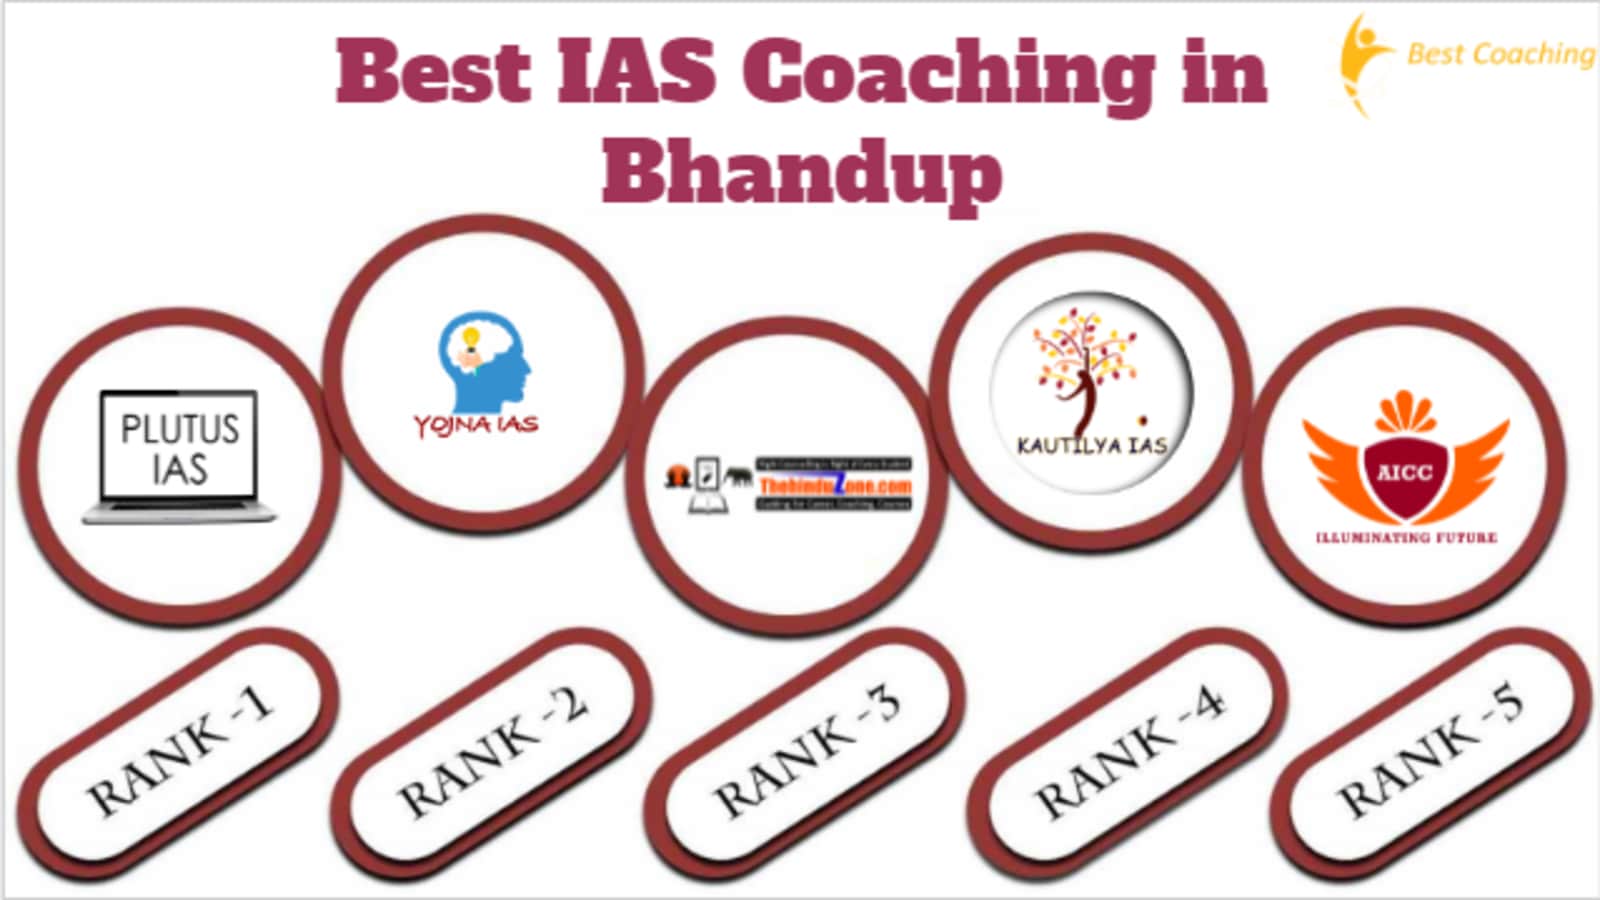 Top IAS Coaching in Bhandup